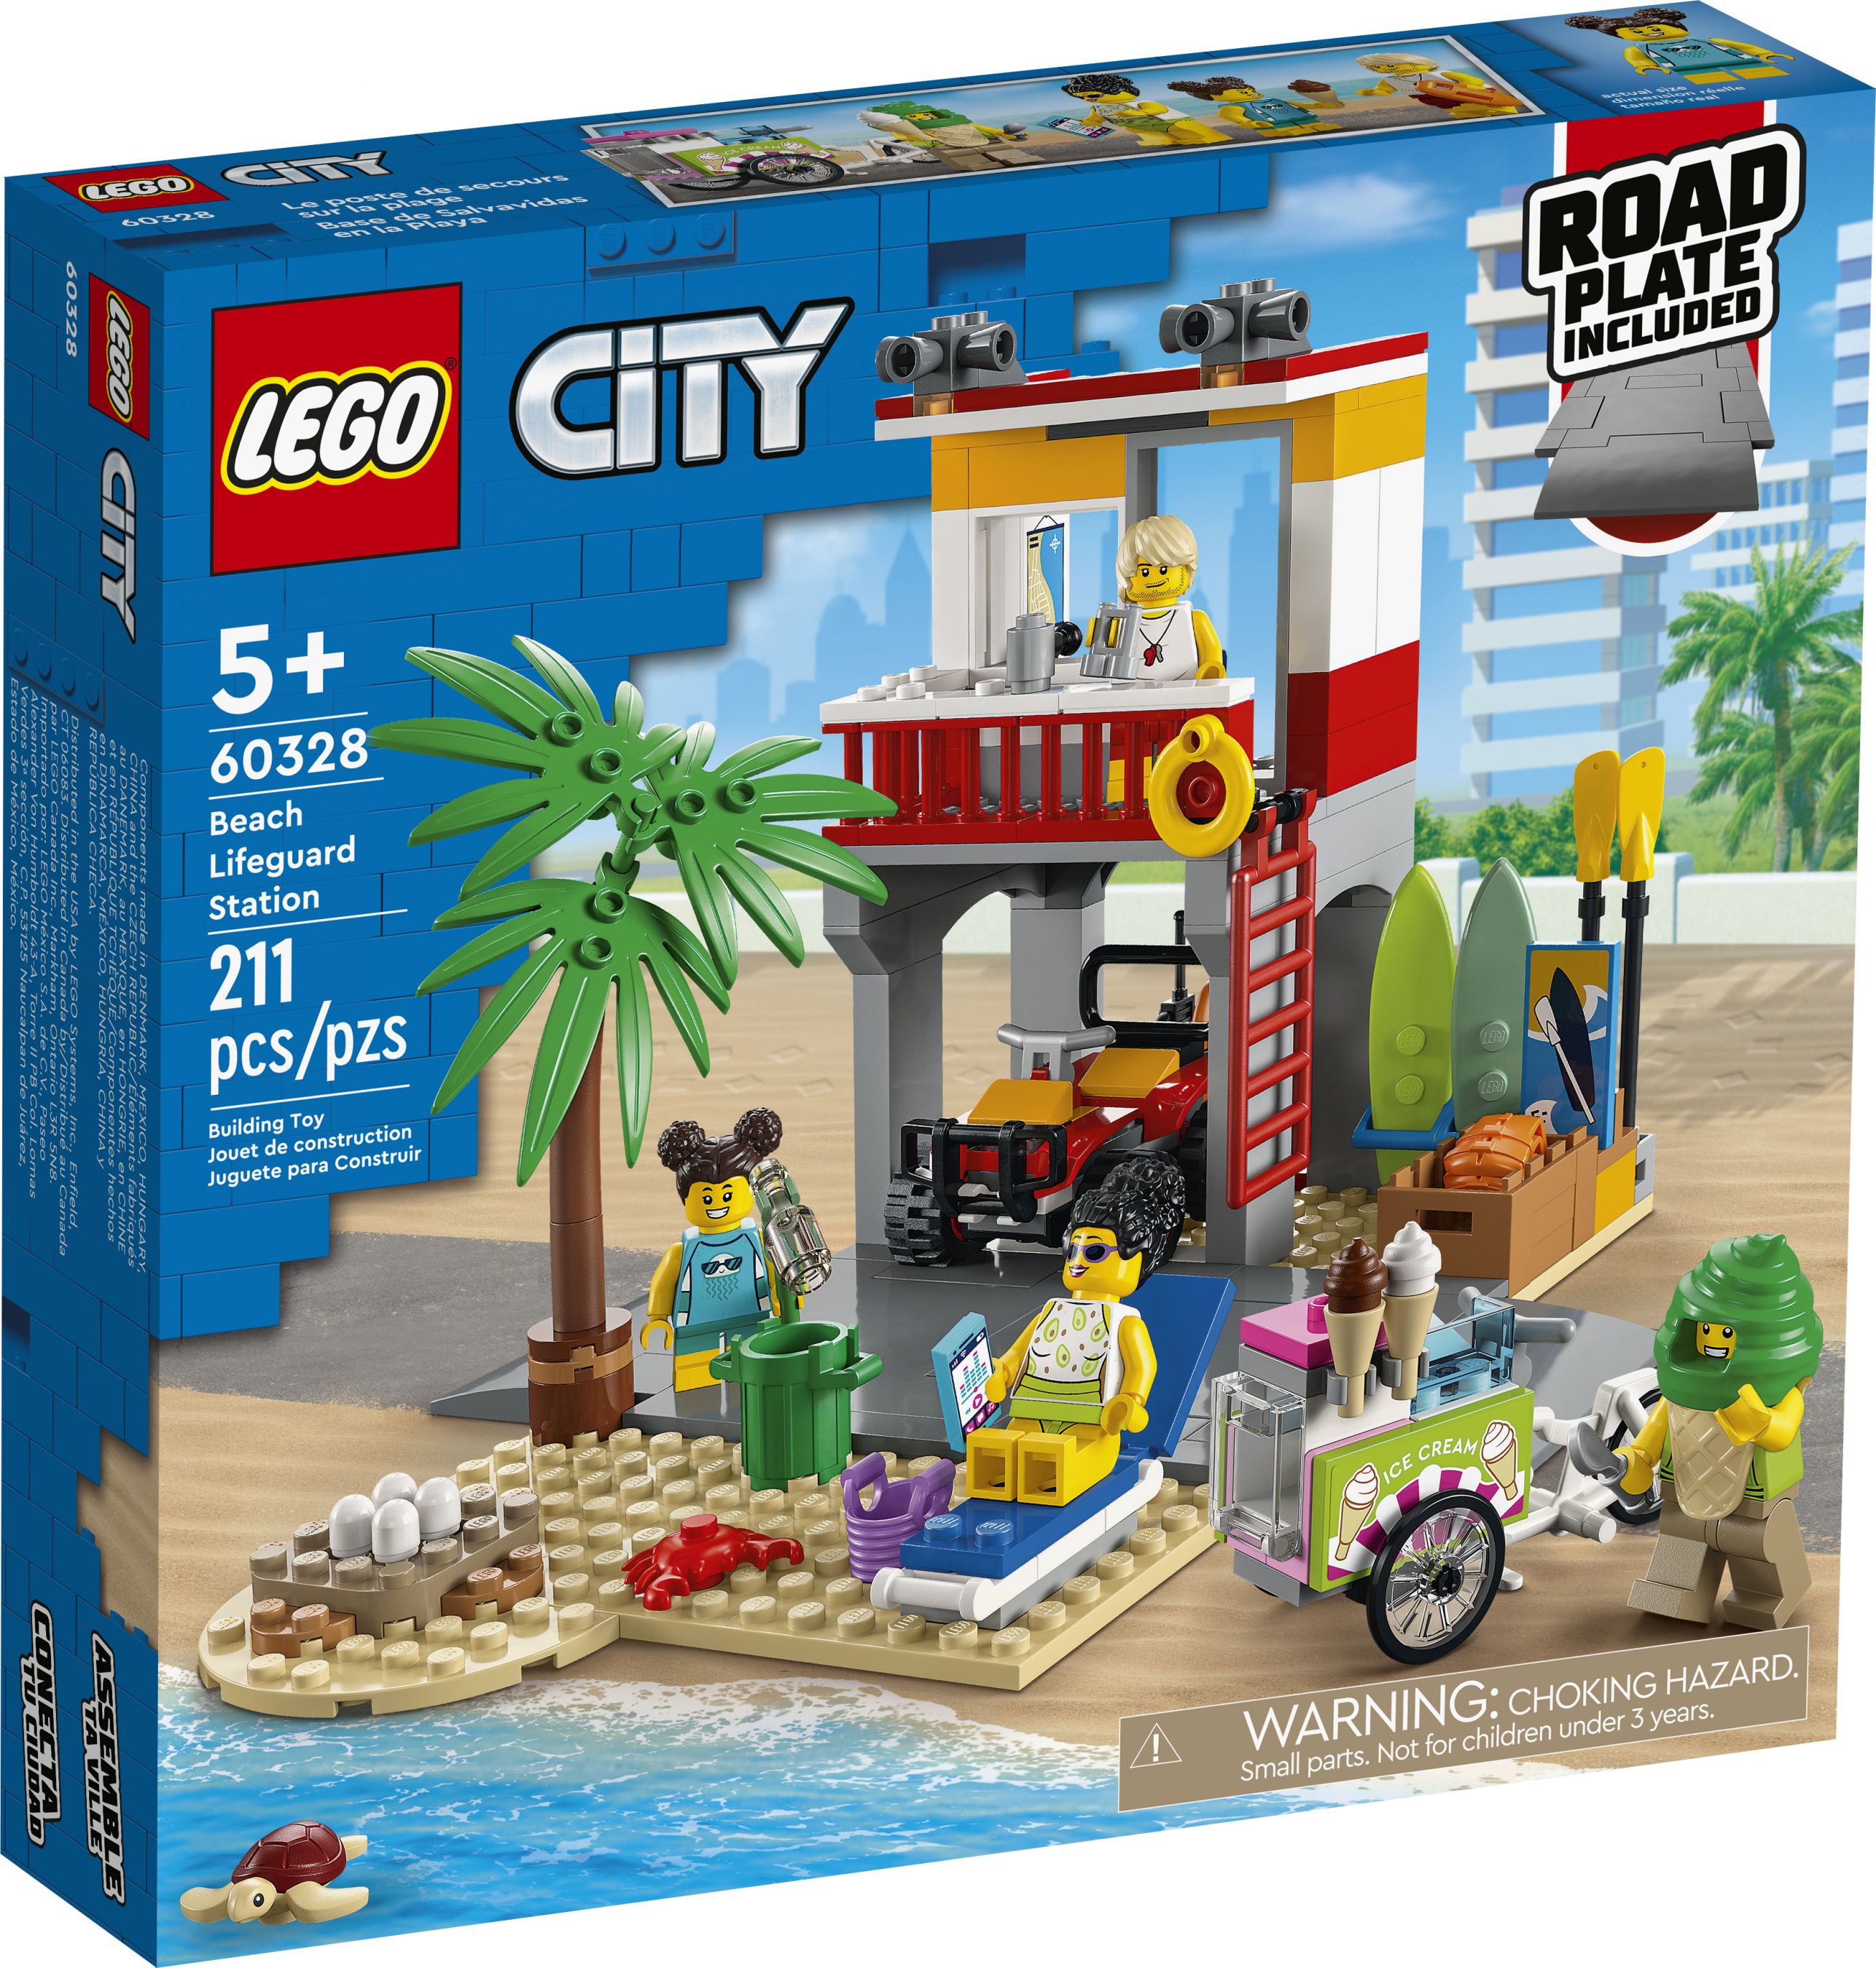 LEGO City 60328 Rettungsschwimmer-Station LEGO_60328_Box1_v39.jpg